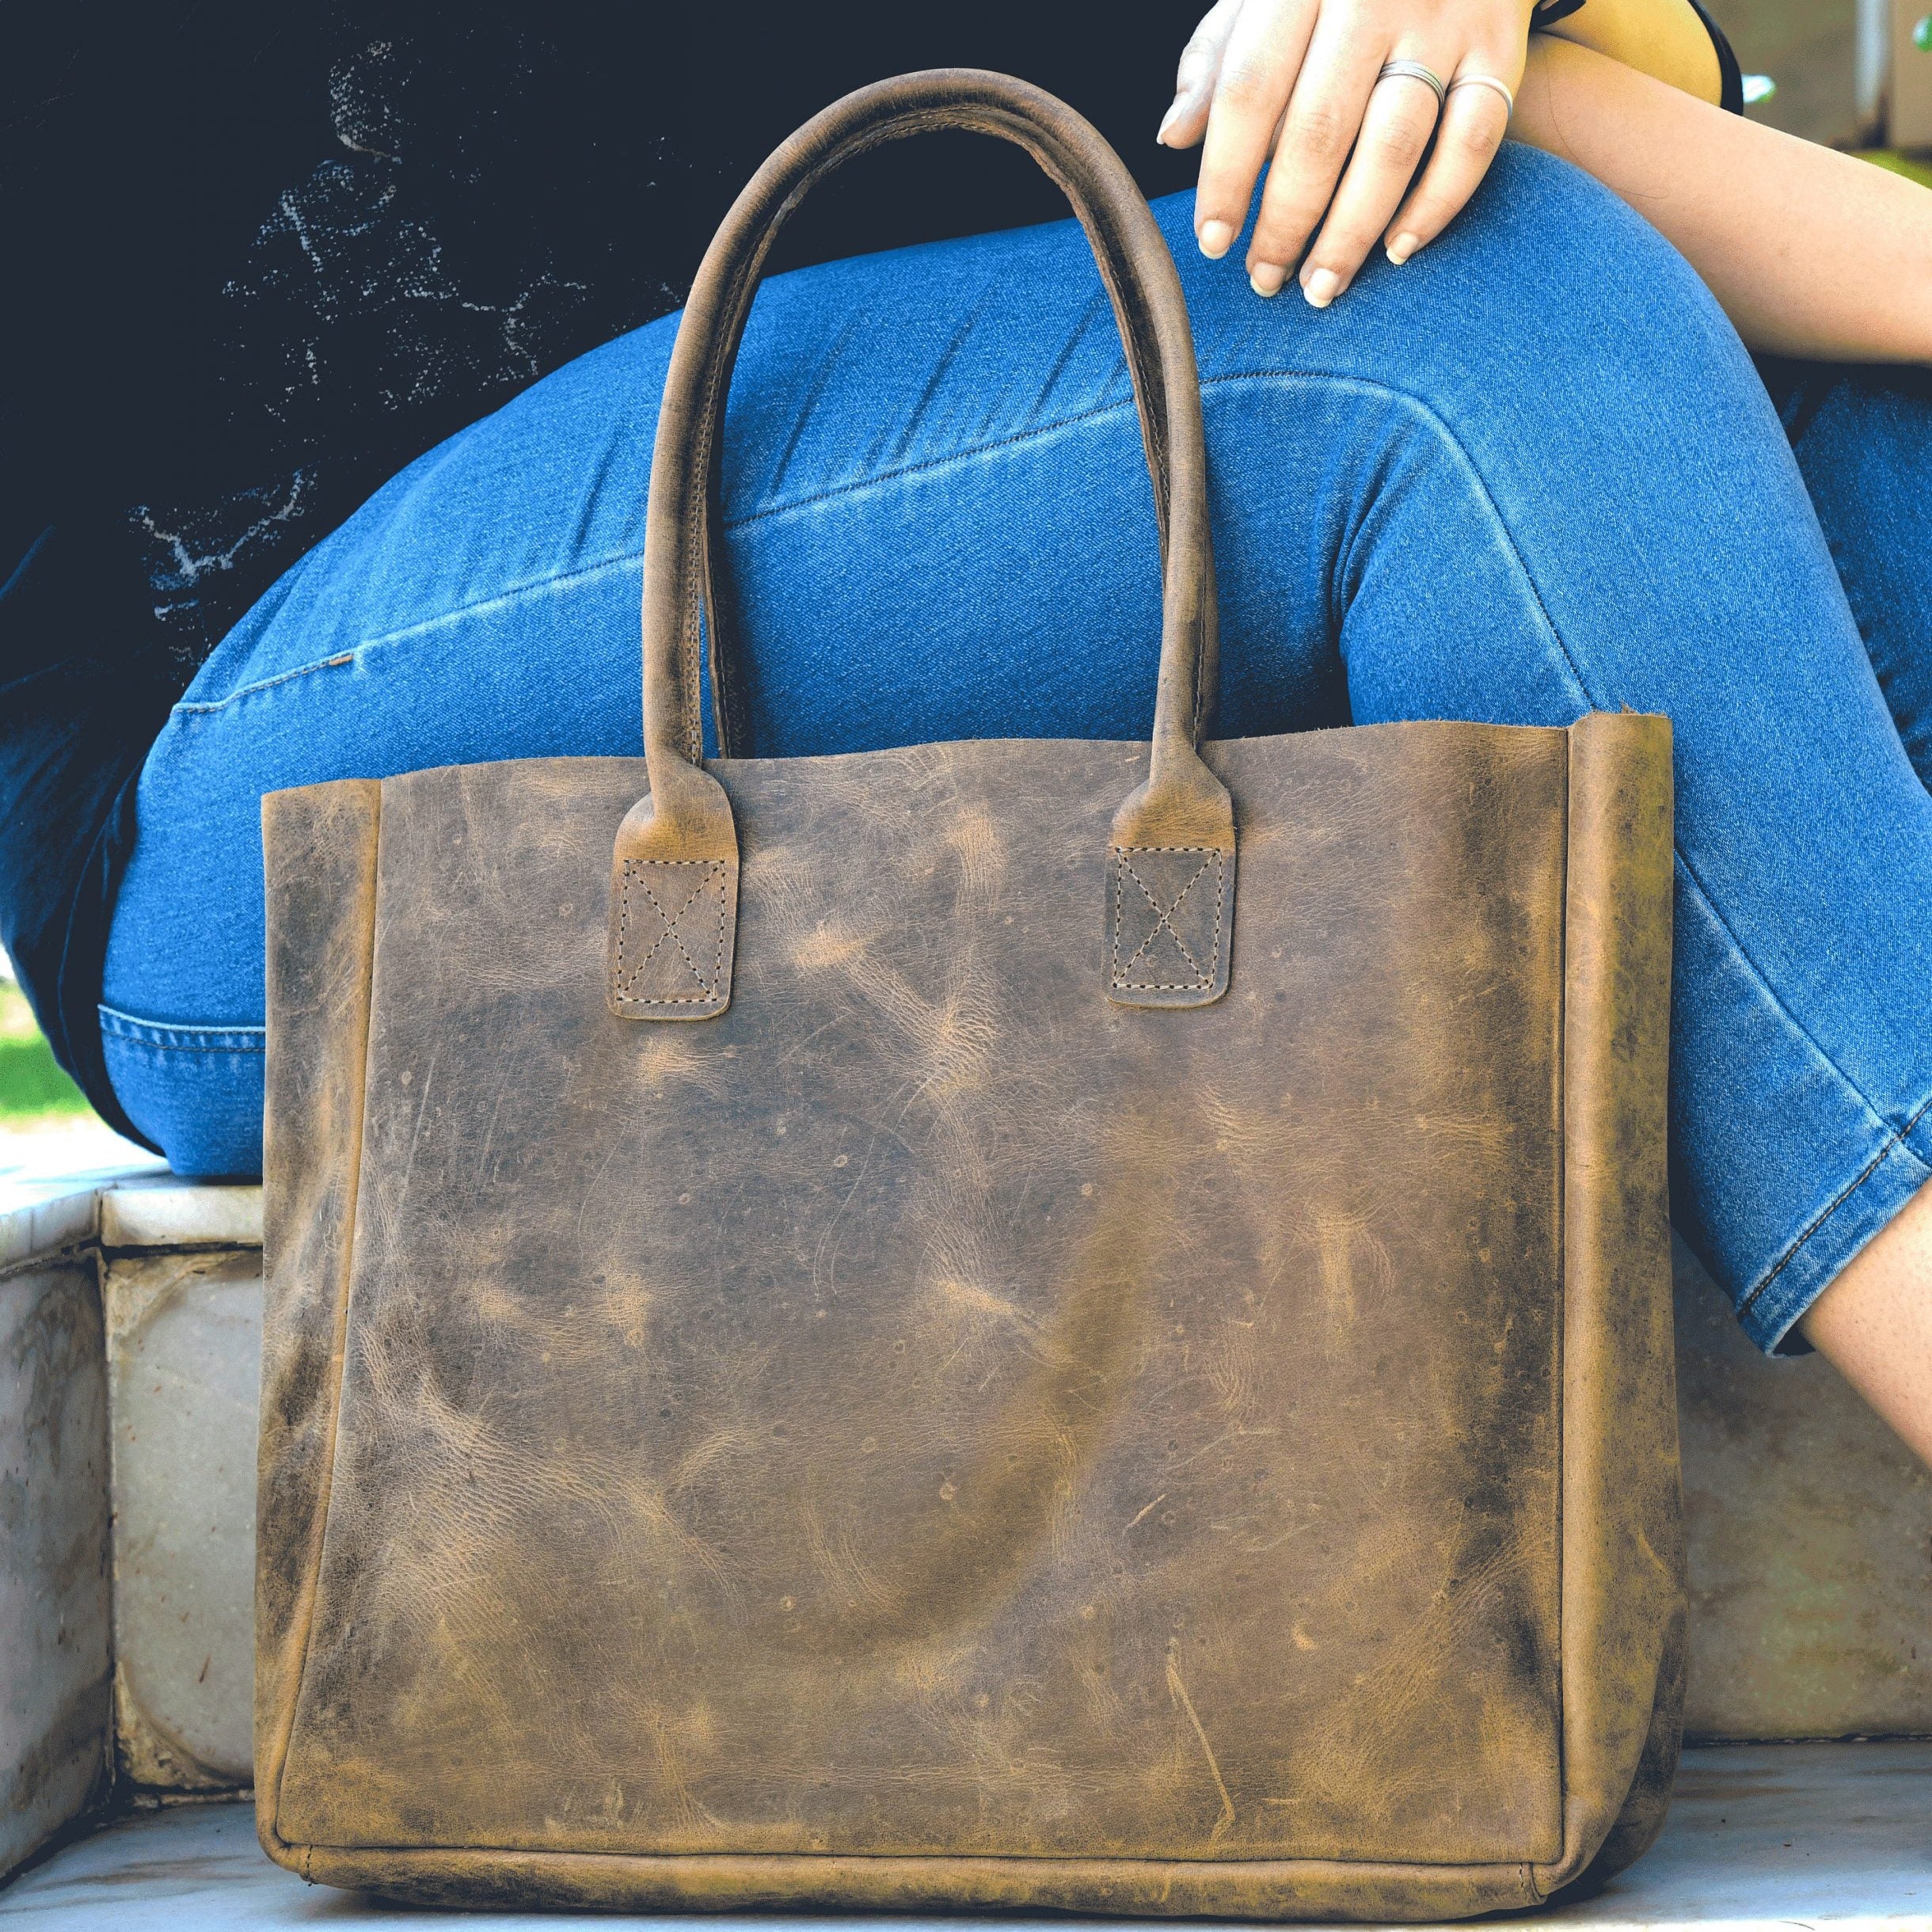 Monogrammed Elegance: Ladies' Computer Bag in Brown Leather